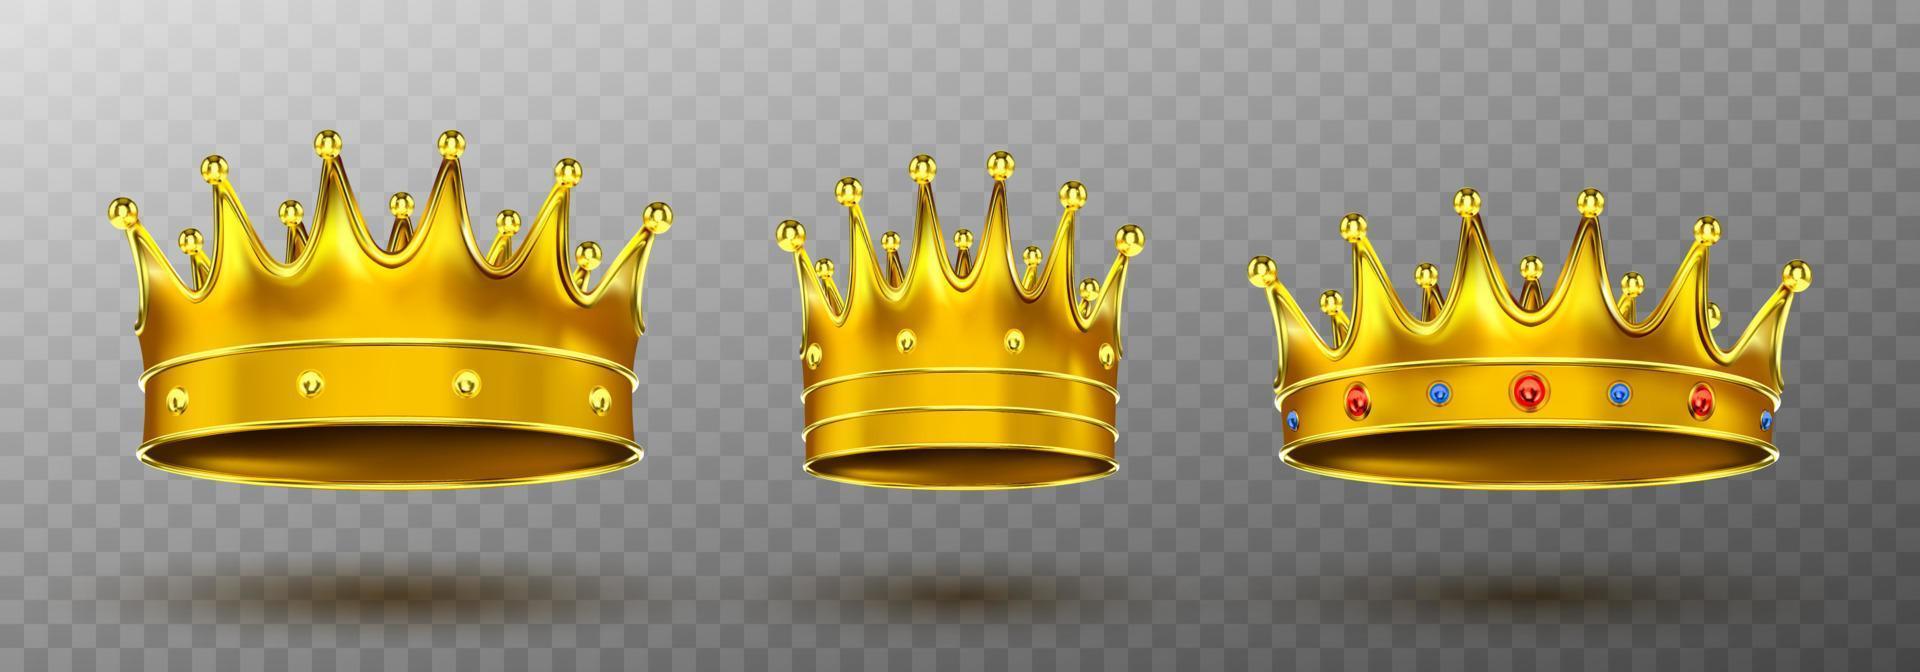 d'oro corone per re o Regina monarchia simbolo vettore